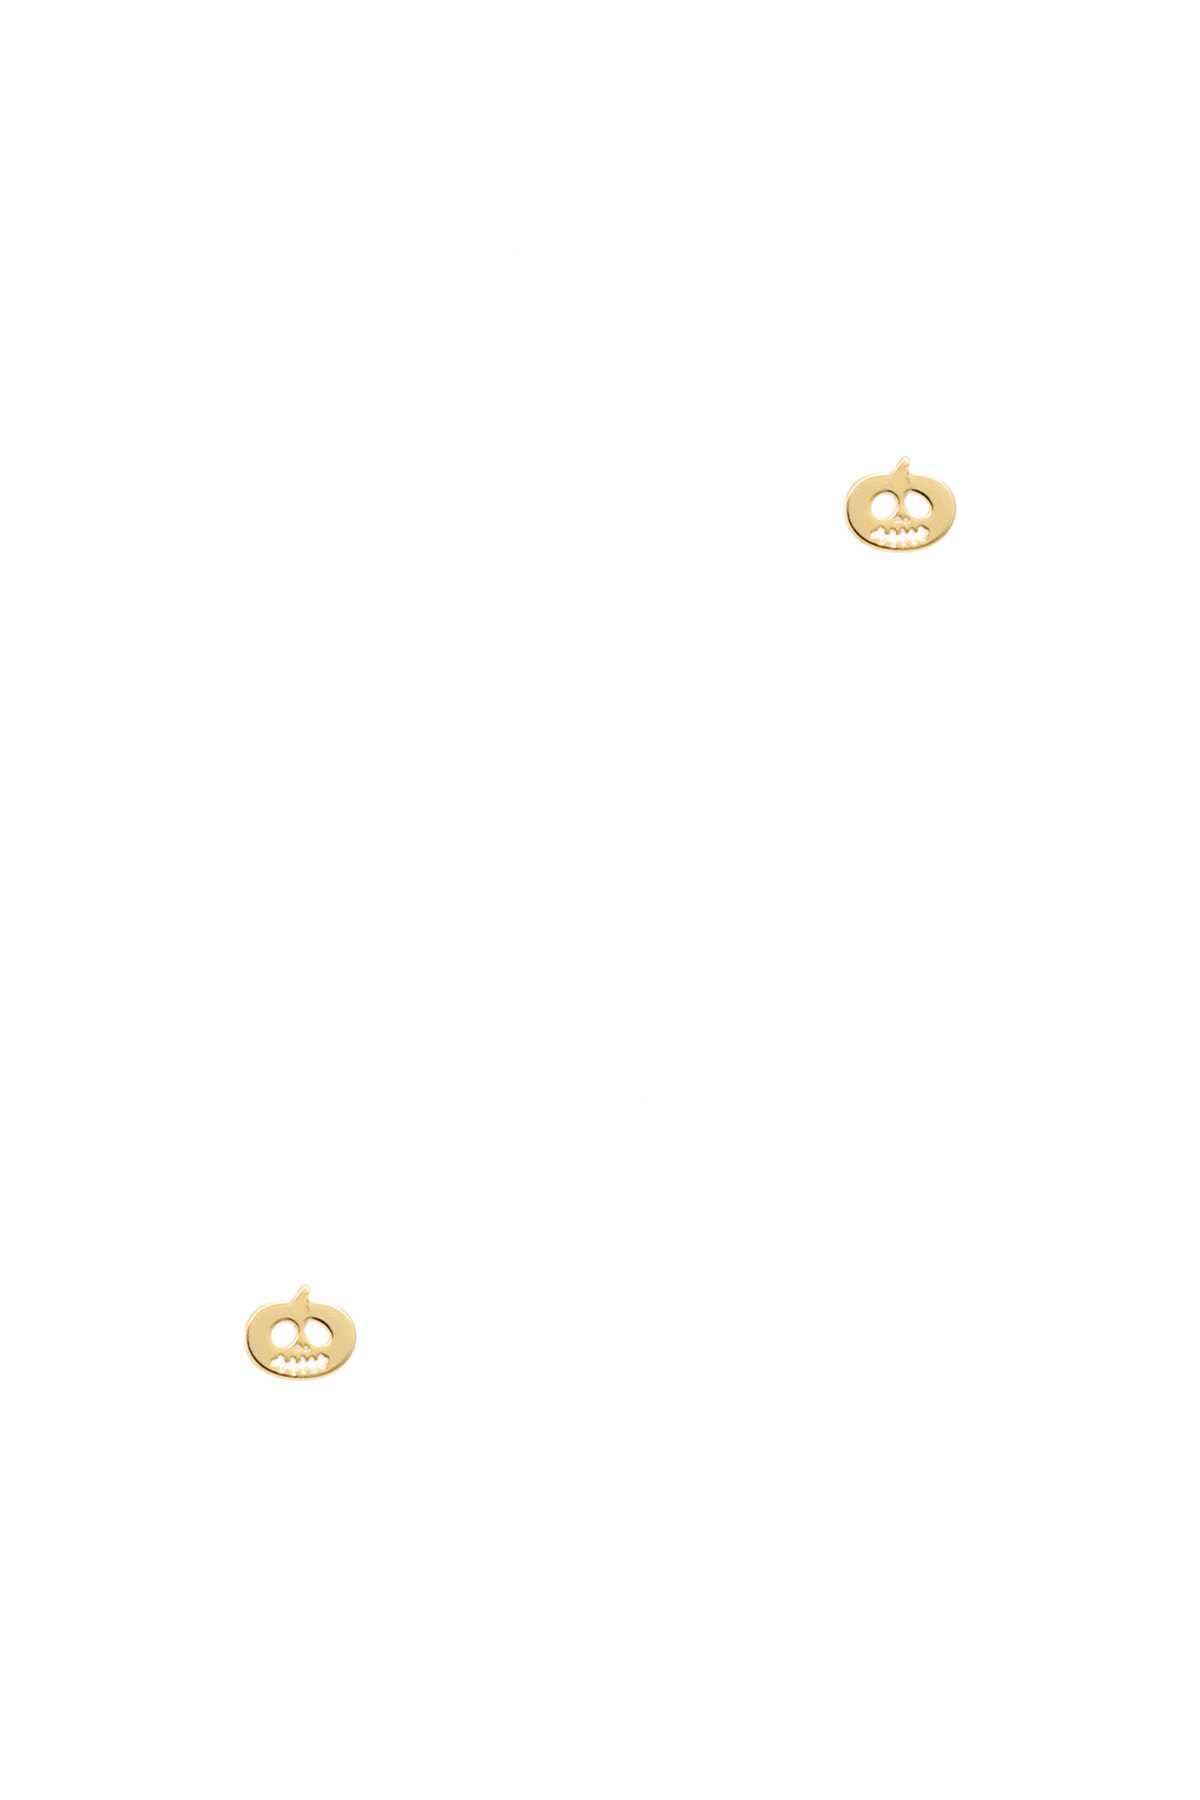 Gold Dipped Halloween Pumpkin Stud Earring